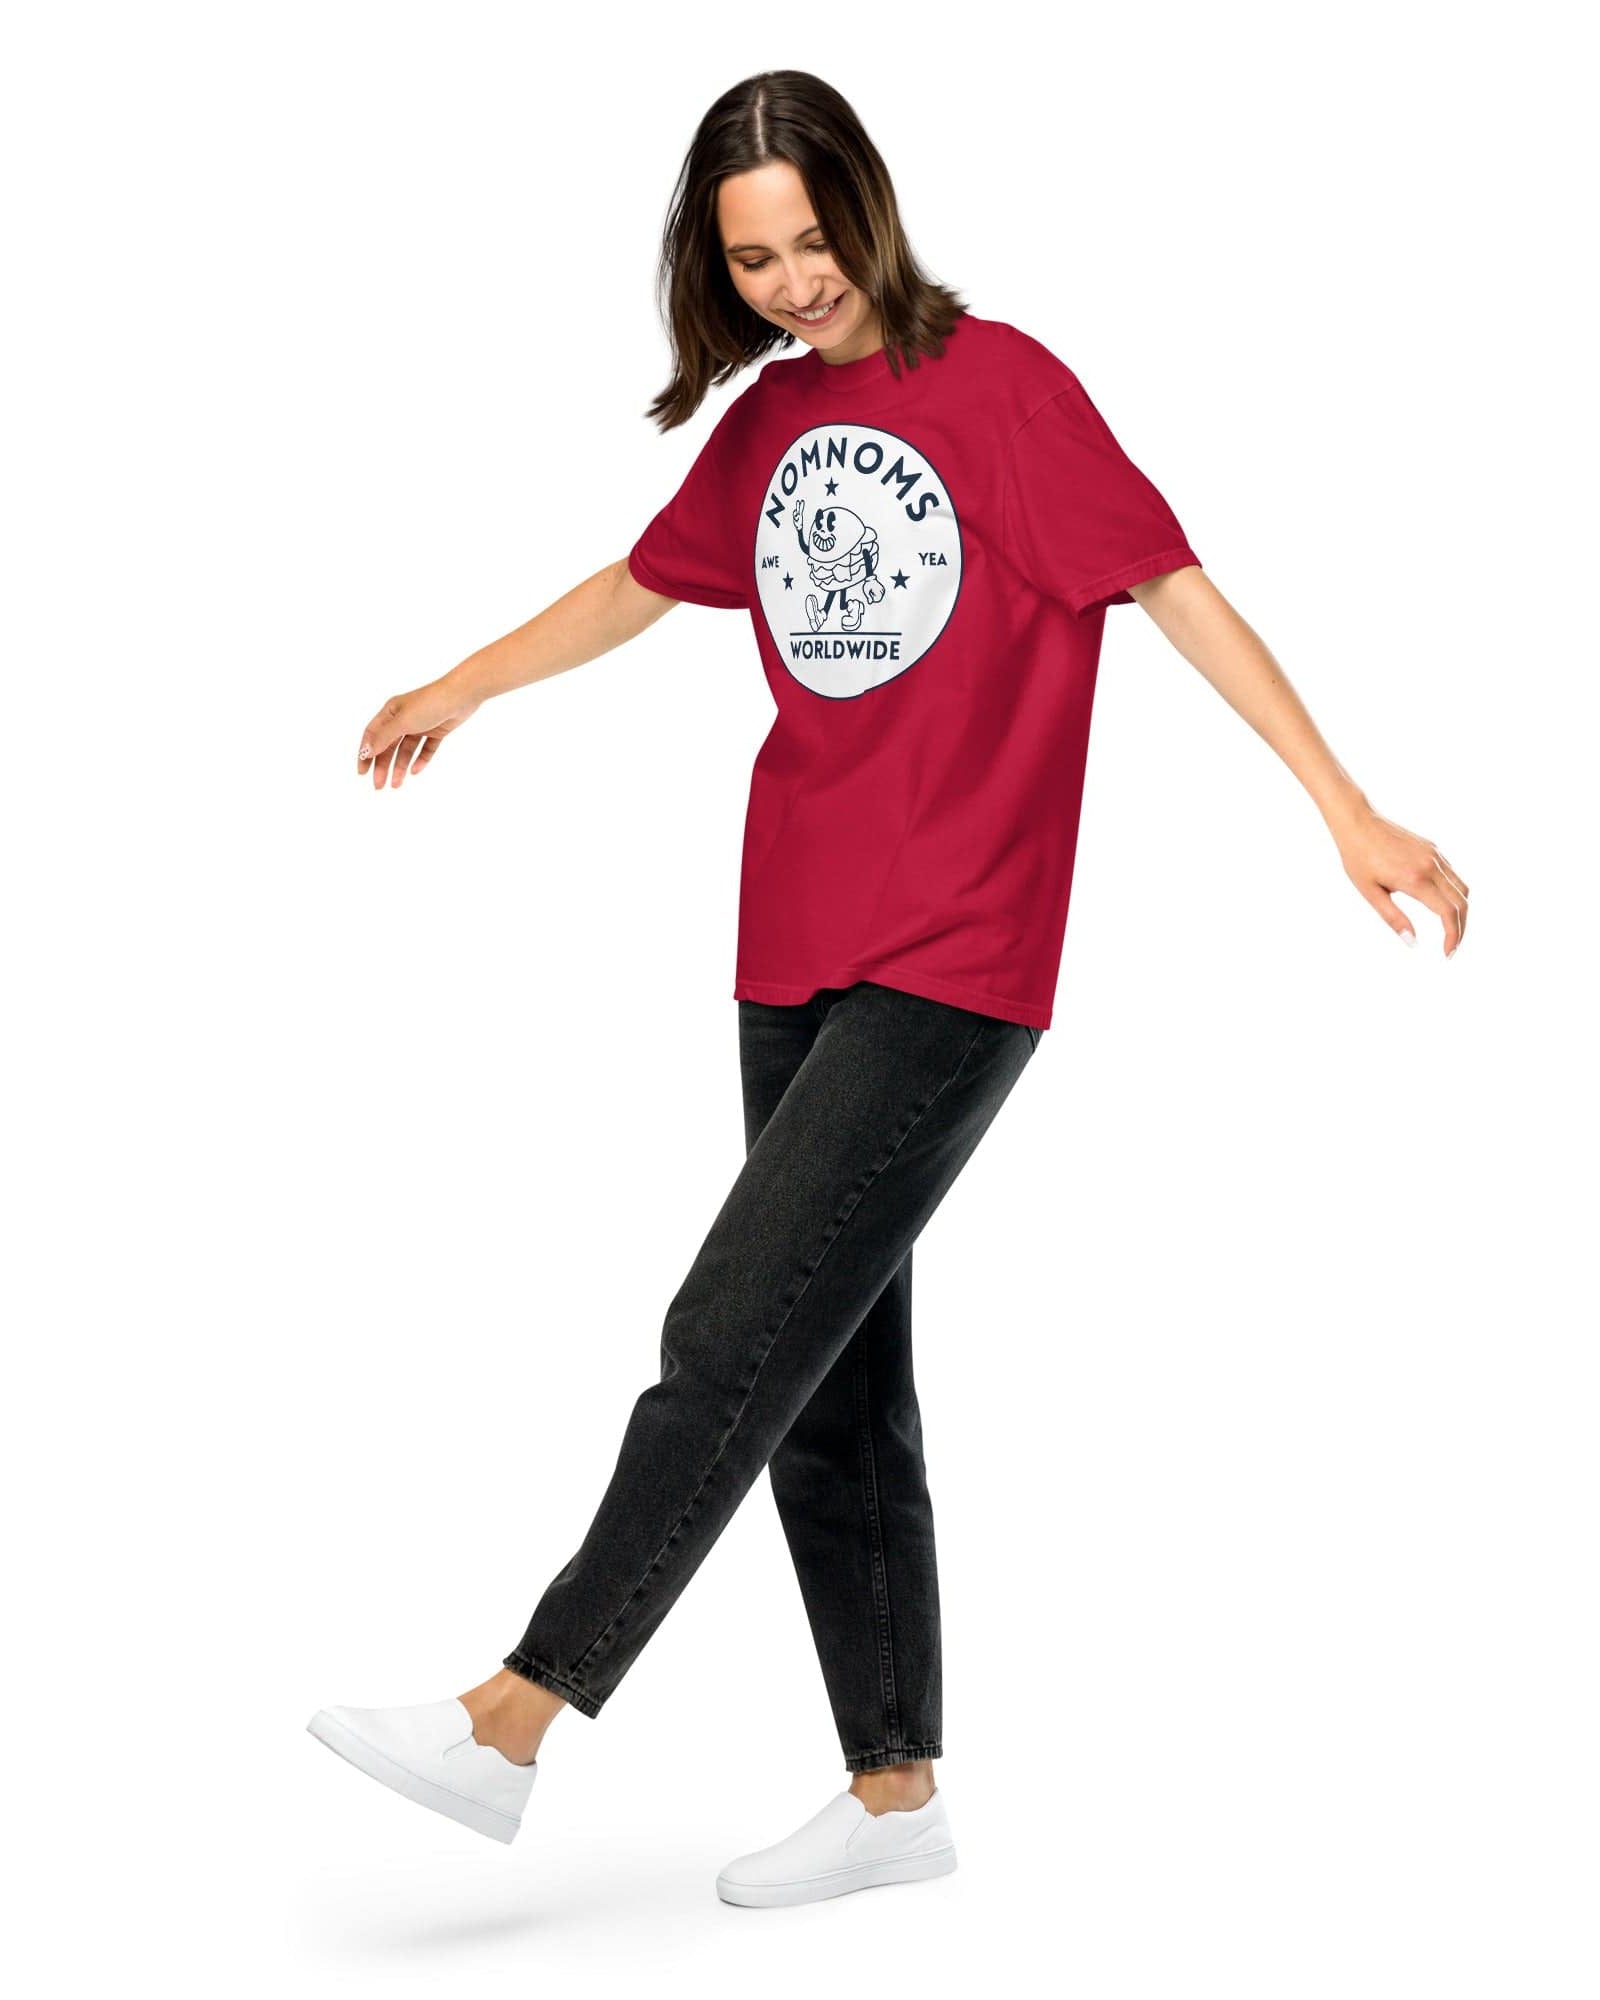 Nomnoms Worldwide Garment-dyed Heavyweight T-shirt Shirts & Tops Jolly & Goode